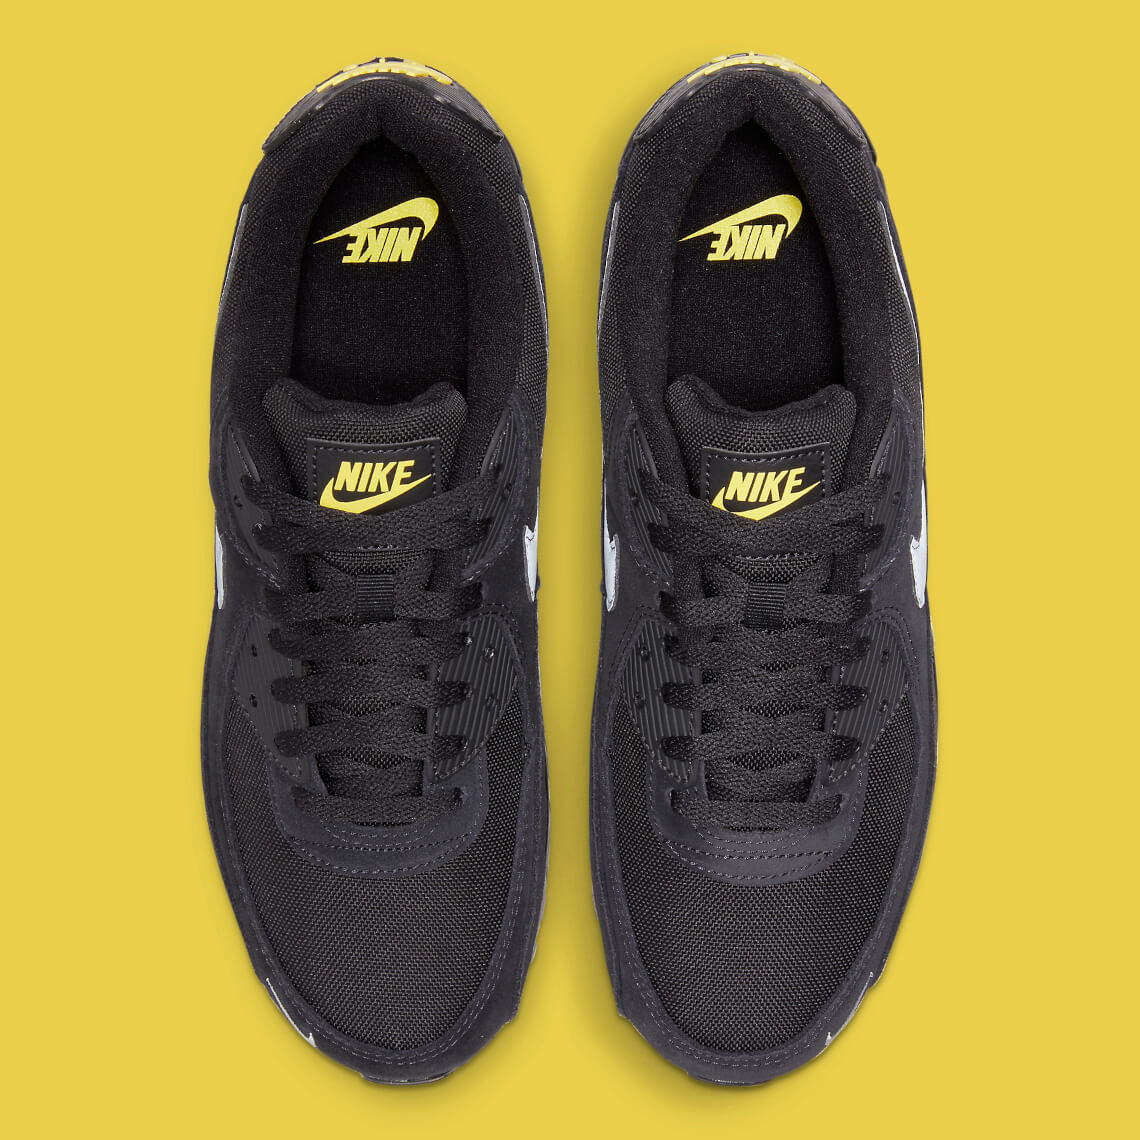 Arcaico ego ayudante 🥇 Nike Air Max 90 “Black/Yellow” + COLORWAY TOP+ | zapatillasysneakers.com